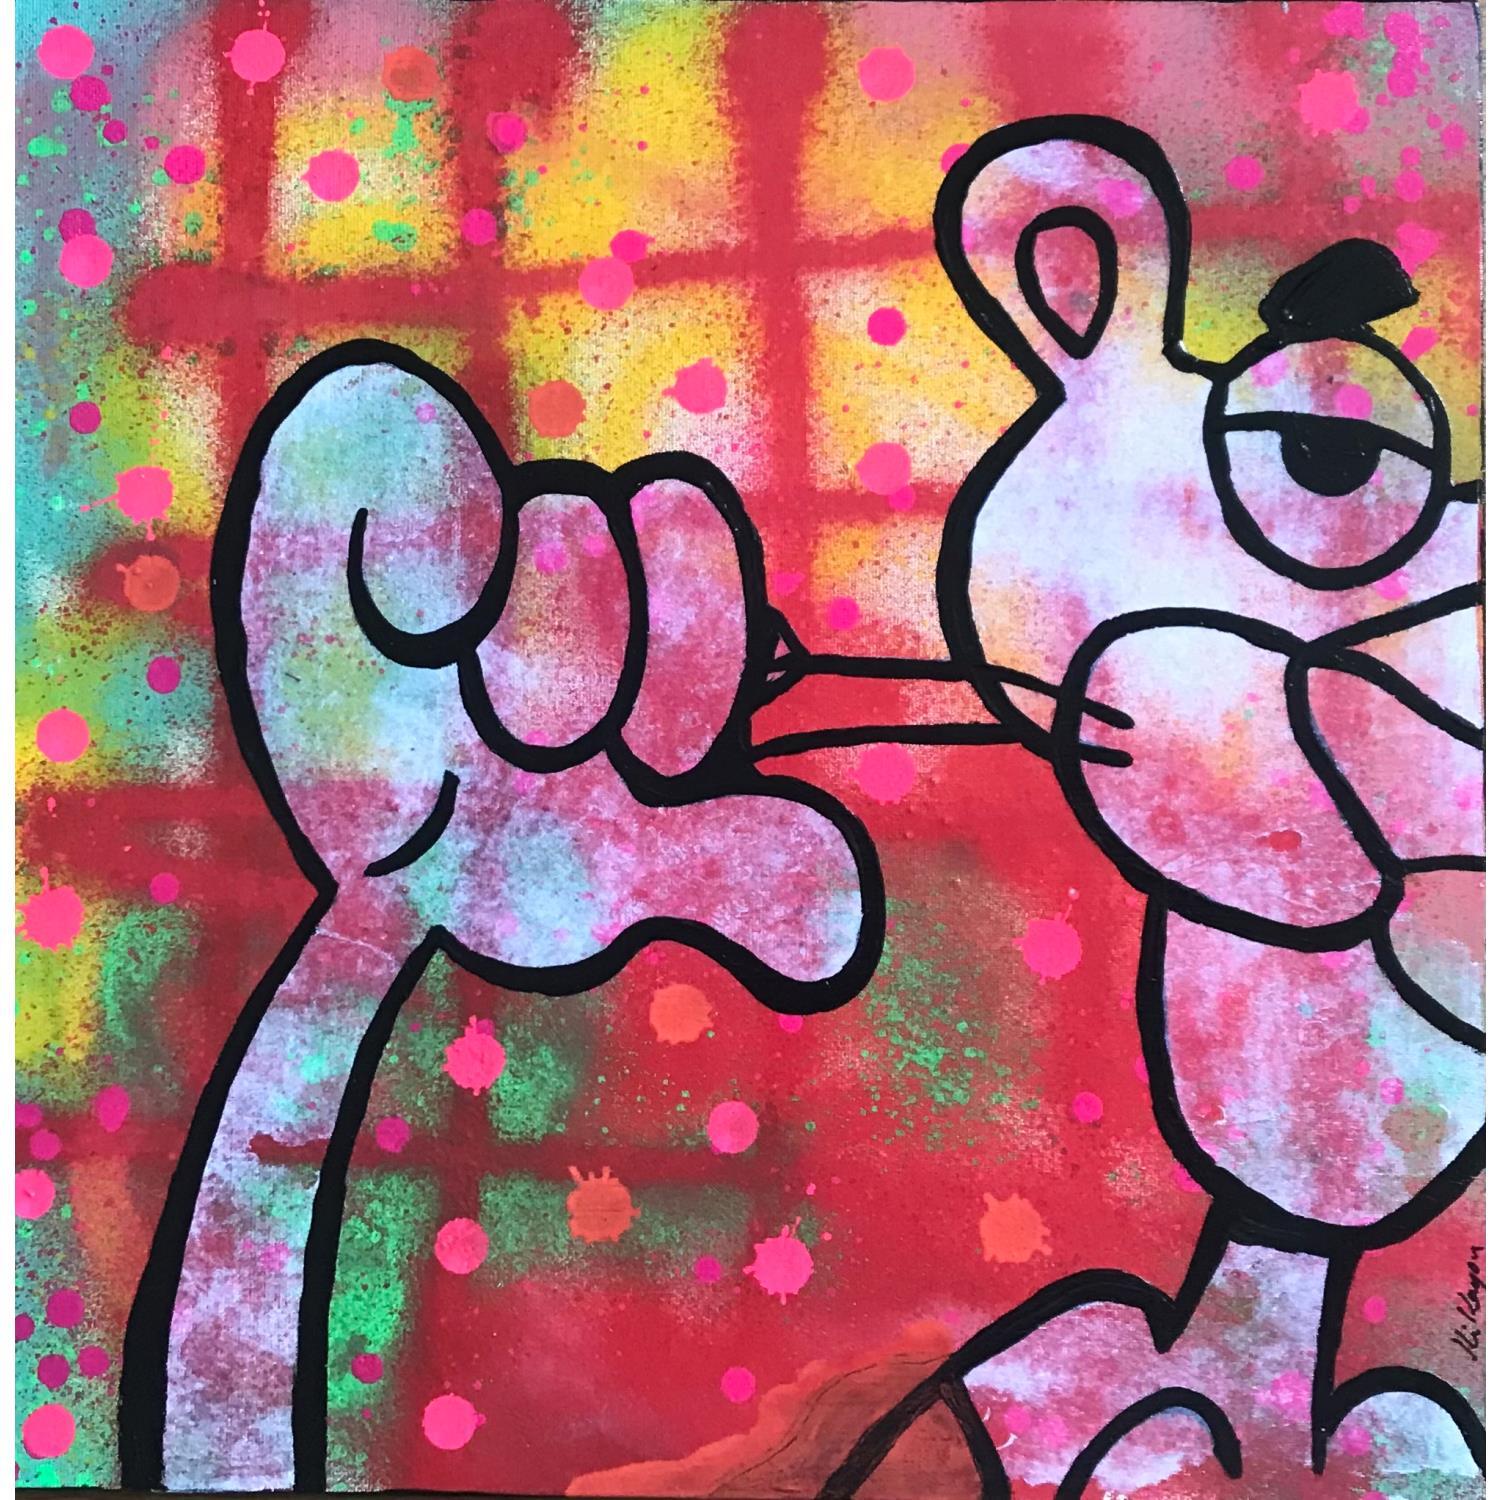 Original Pink Panther Painting the Pink Panther Pop Art 